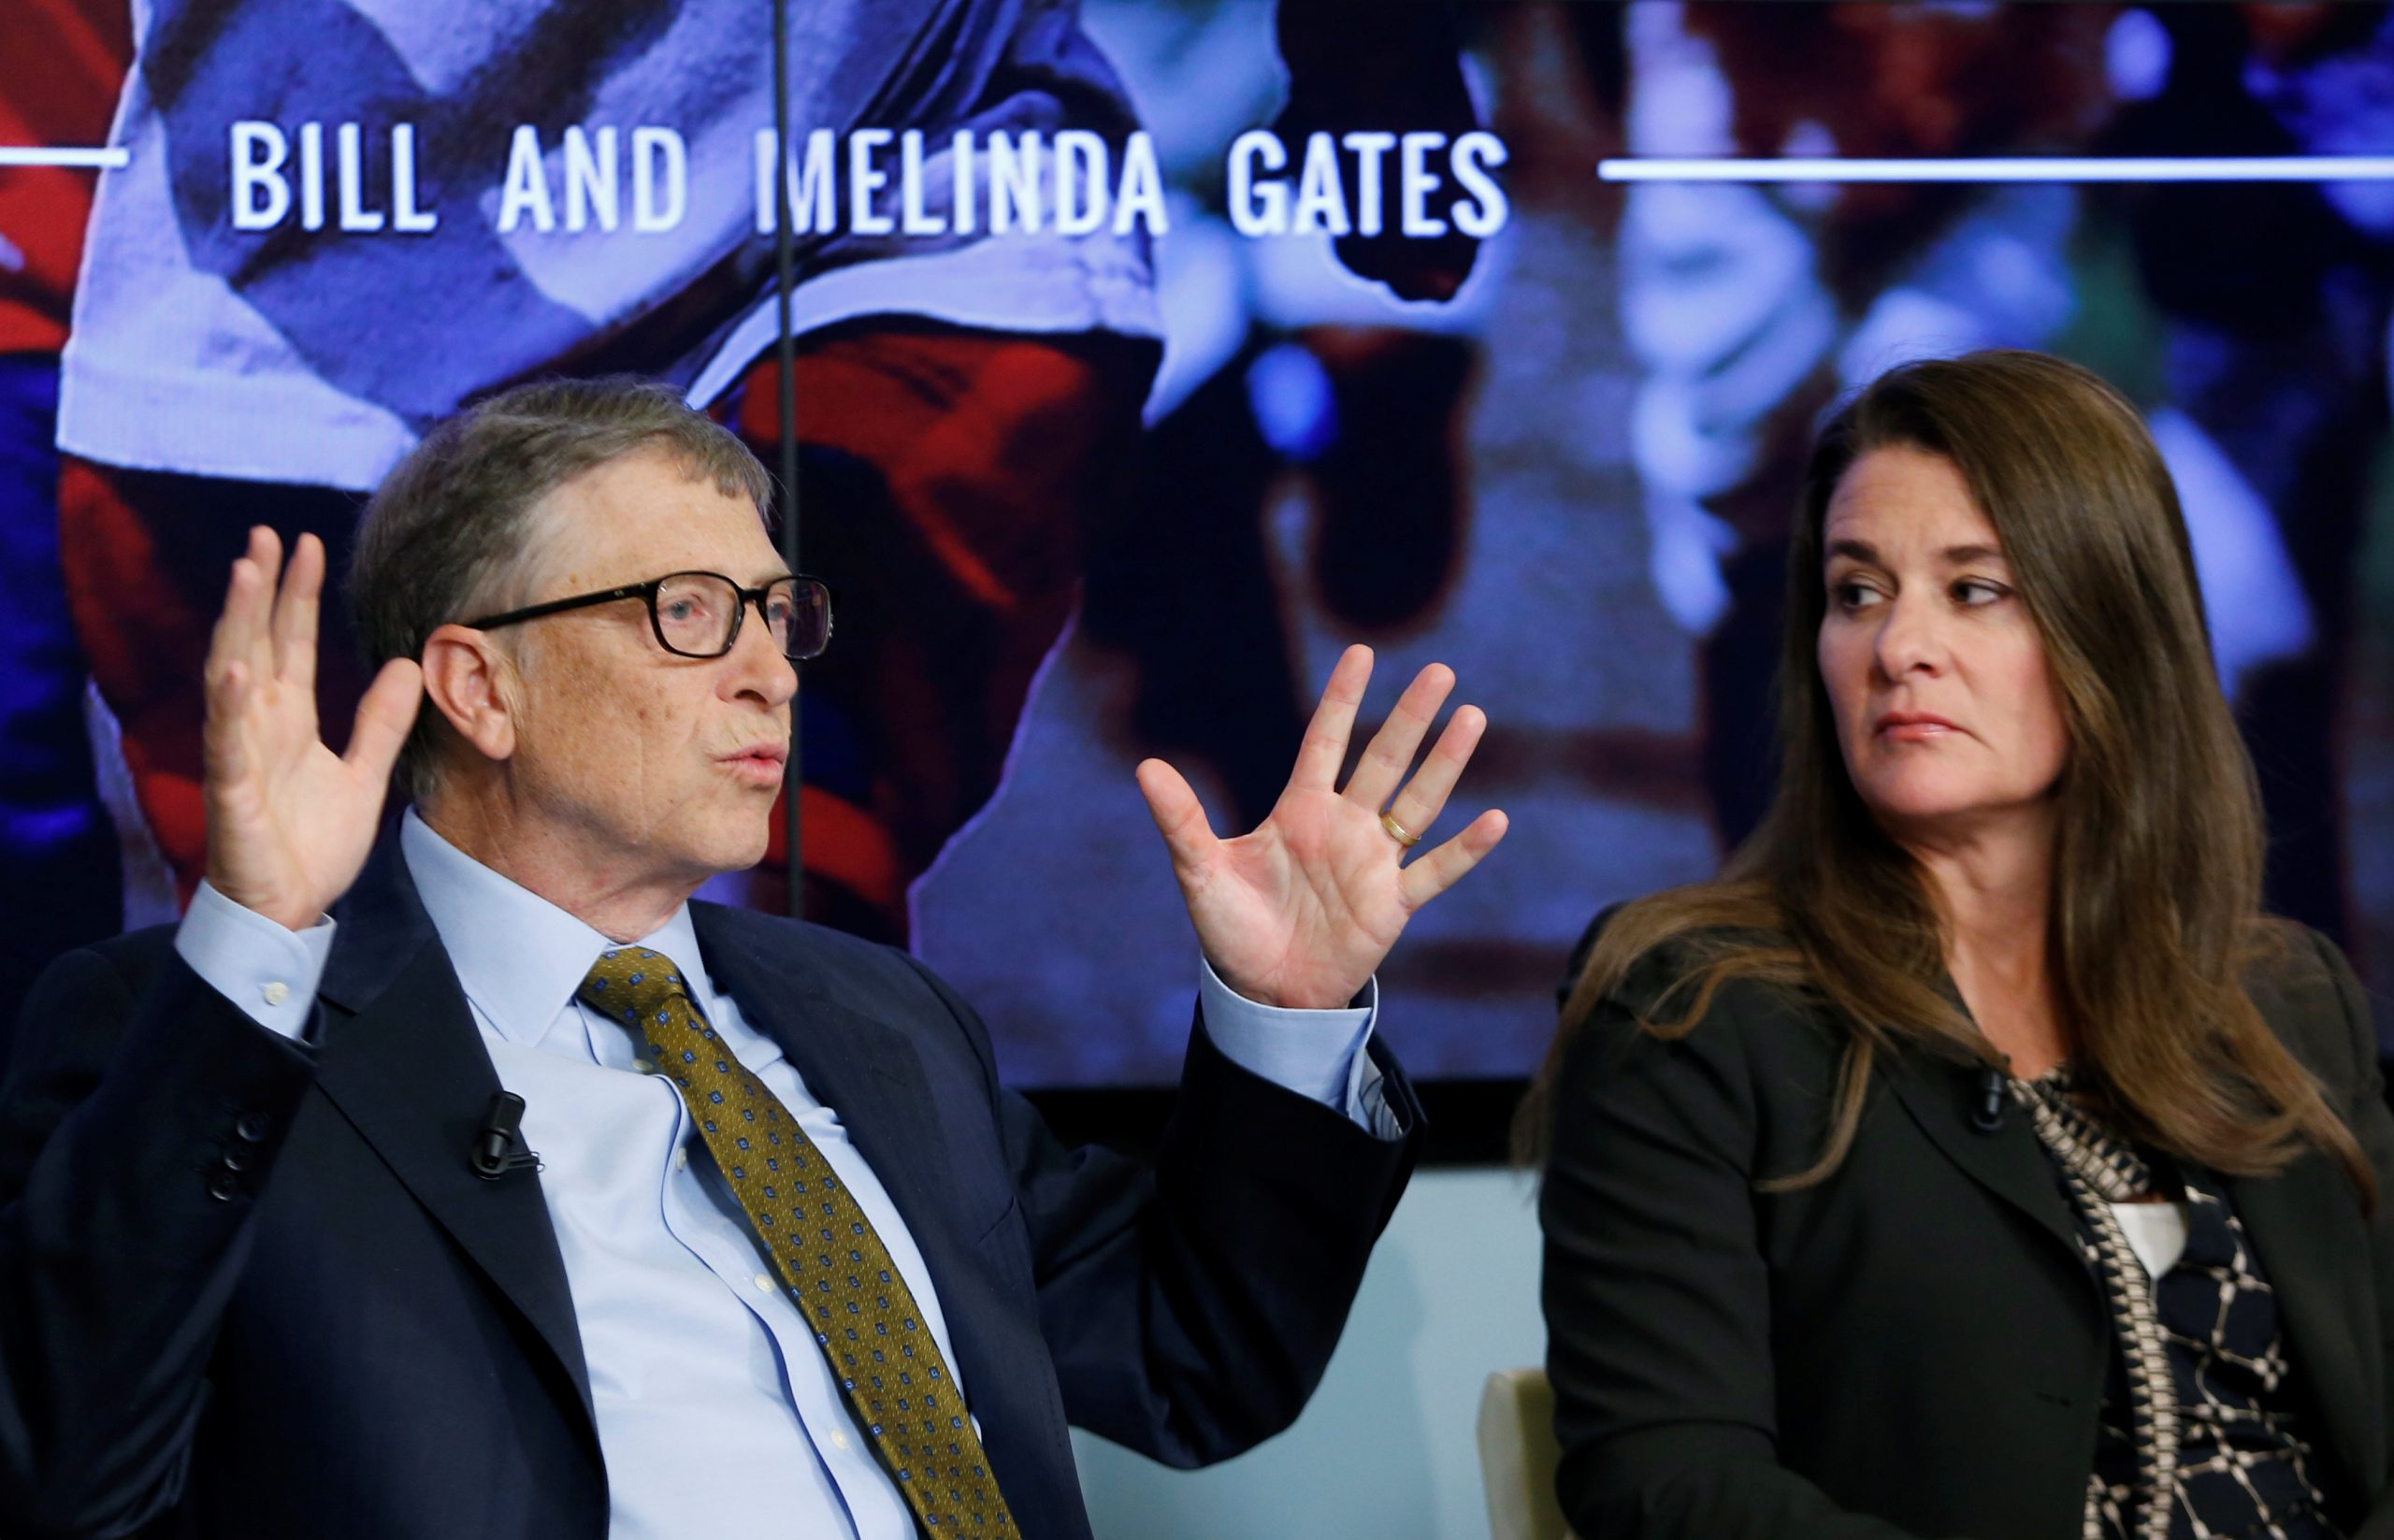 Μπιλ και Μελίντα Γκέιτς χρηματοδότησαν start-up που σχεδιάζει φάρμακα με λογισμικό τεχνητής νοημοσύνης